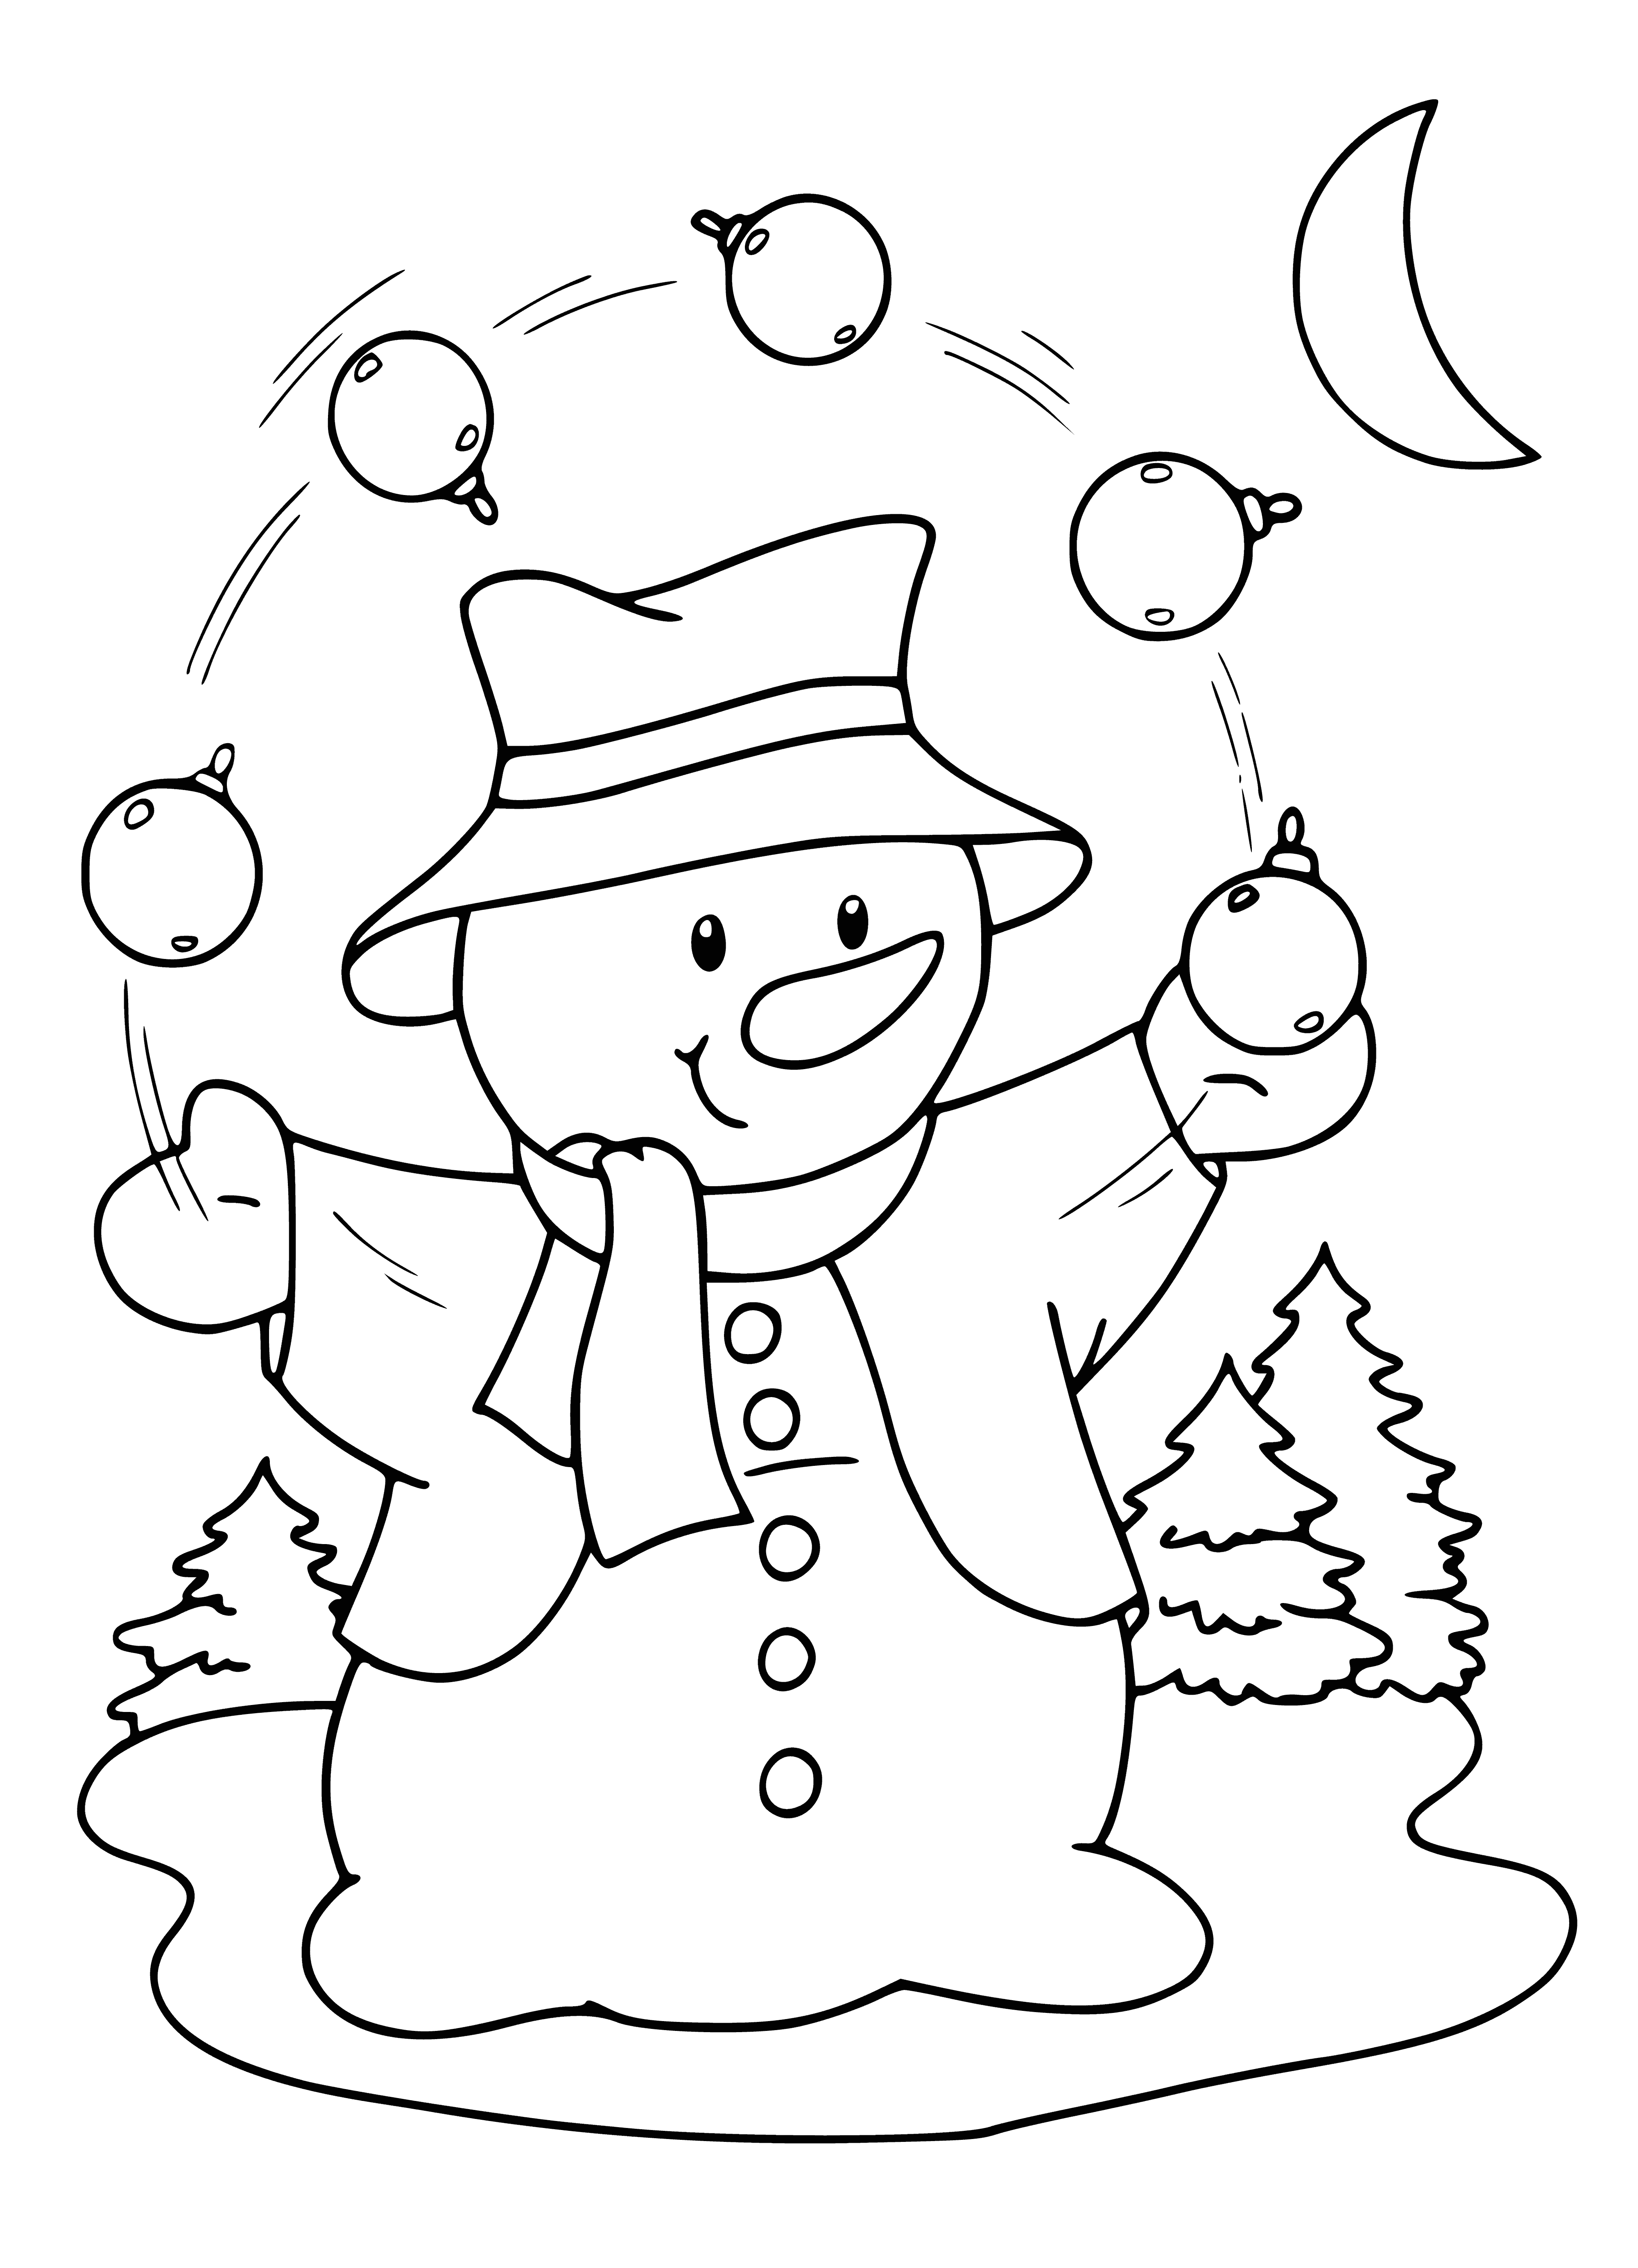 Schneemann jongliert mit Weihnachtsschmuck Malseite